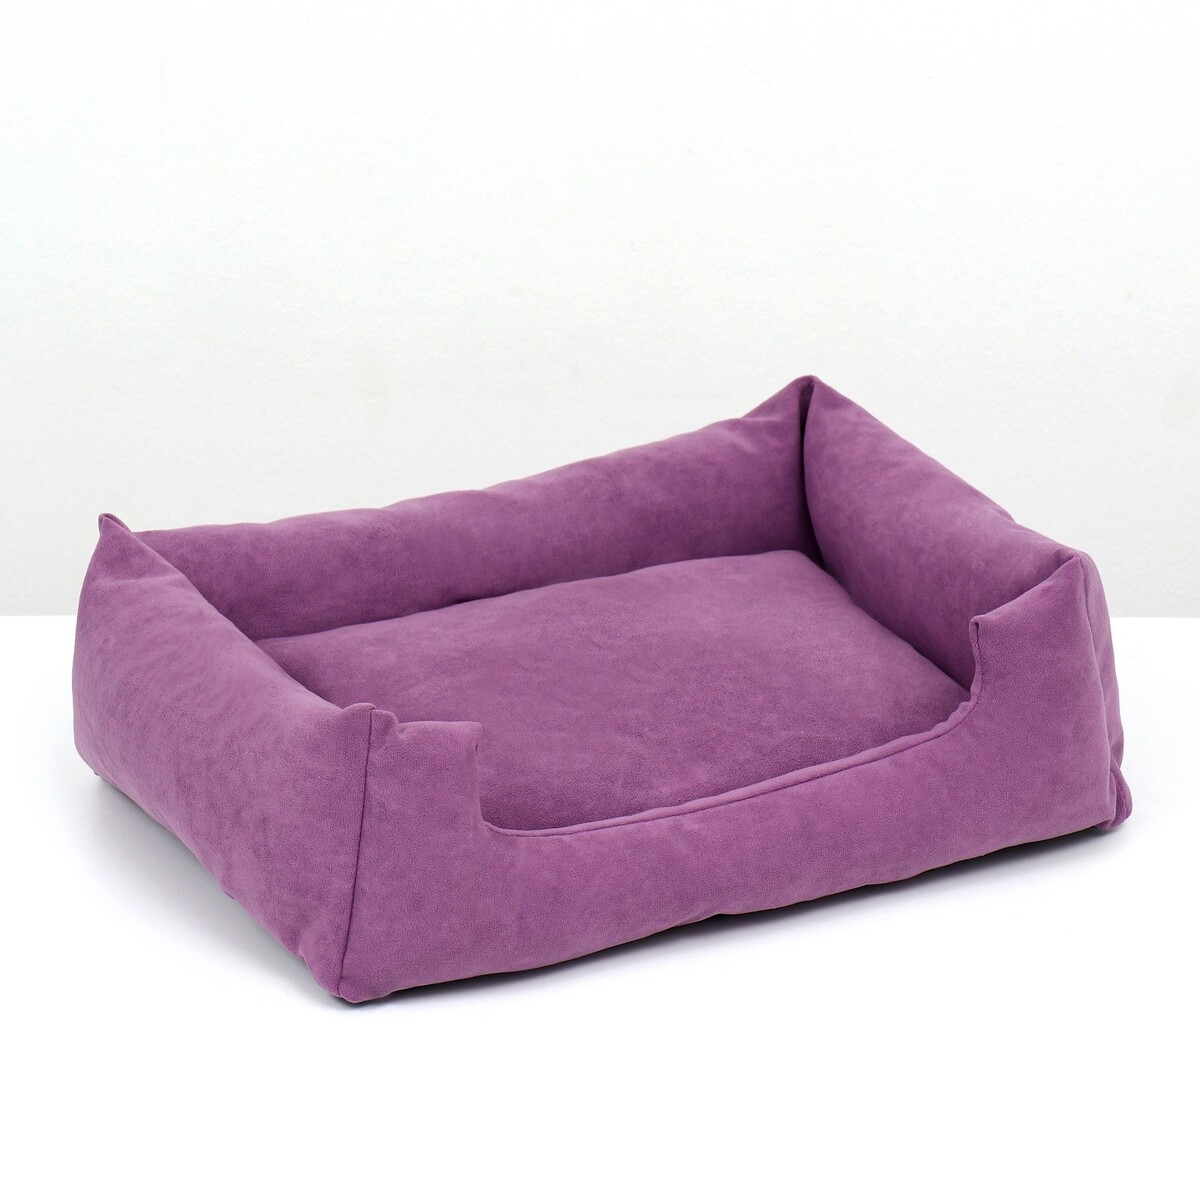 Лежанка-диван, 45 х 35 х 11 см, фиолетовая полусфера bosu гимнастическая 46см фиолетовая с эспандером и насосом b31651 bosu022 9